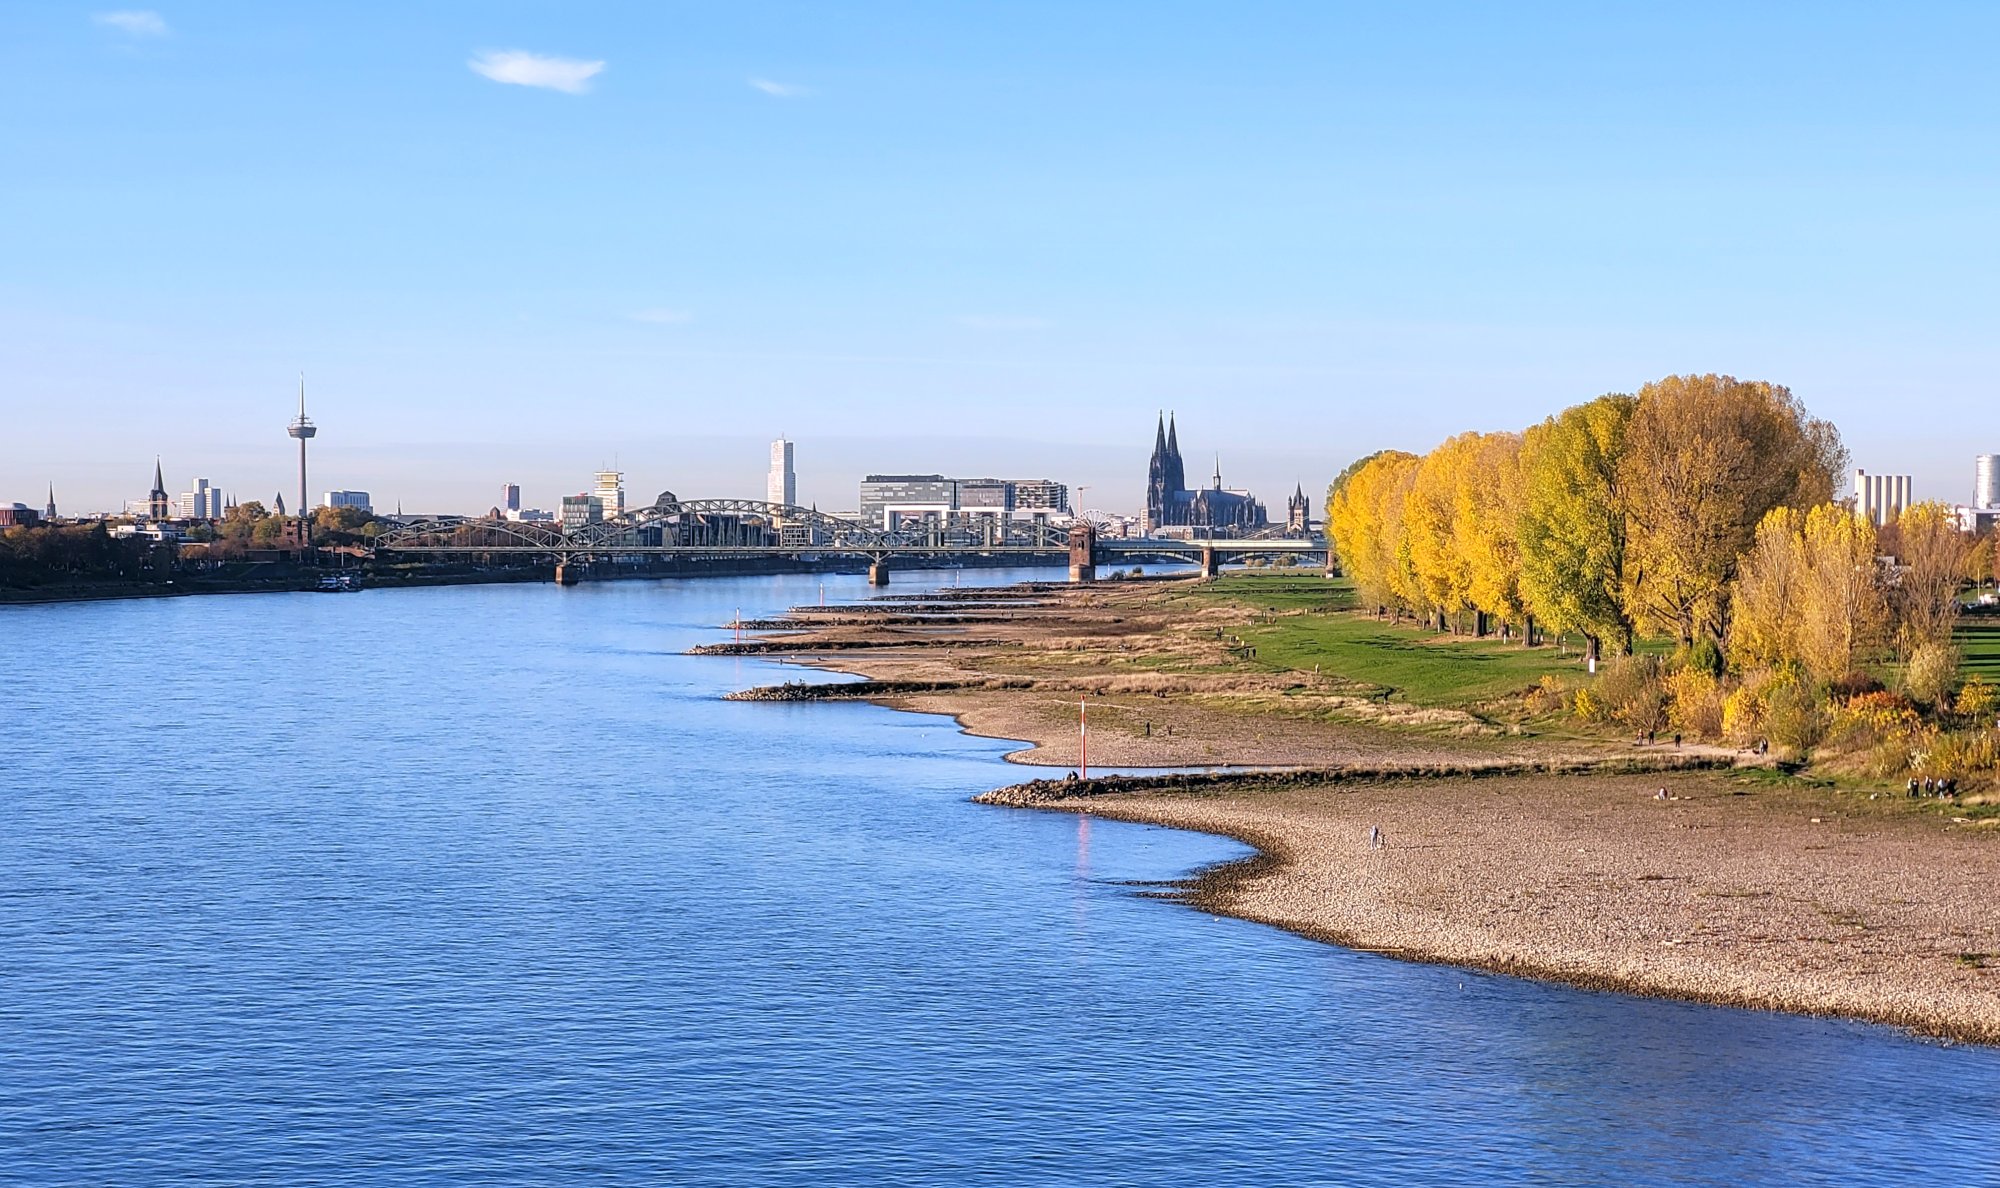 Der Rhein, von der Rodenkirchener Brücke aus gesehen. Blauer Himmel, rechts gelb belaubte Pappeln, hinten links der Fernsehturm, hinten in der Mitte der Kölner Dom